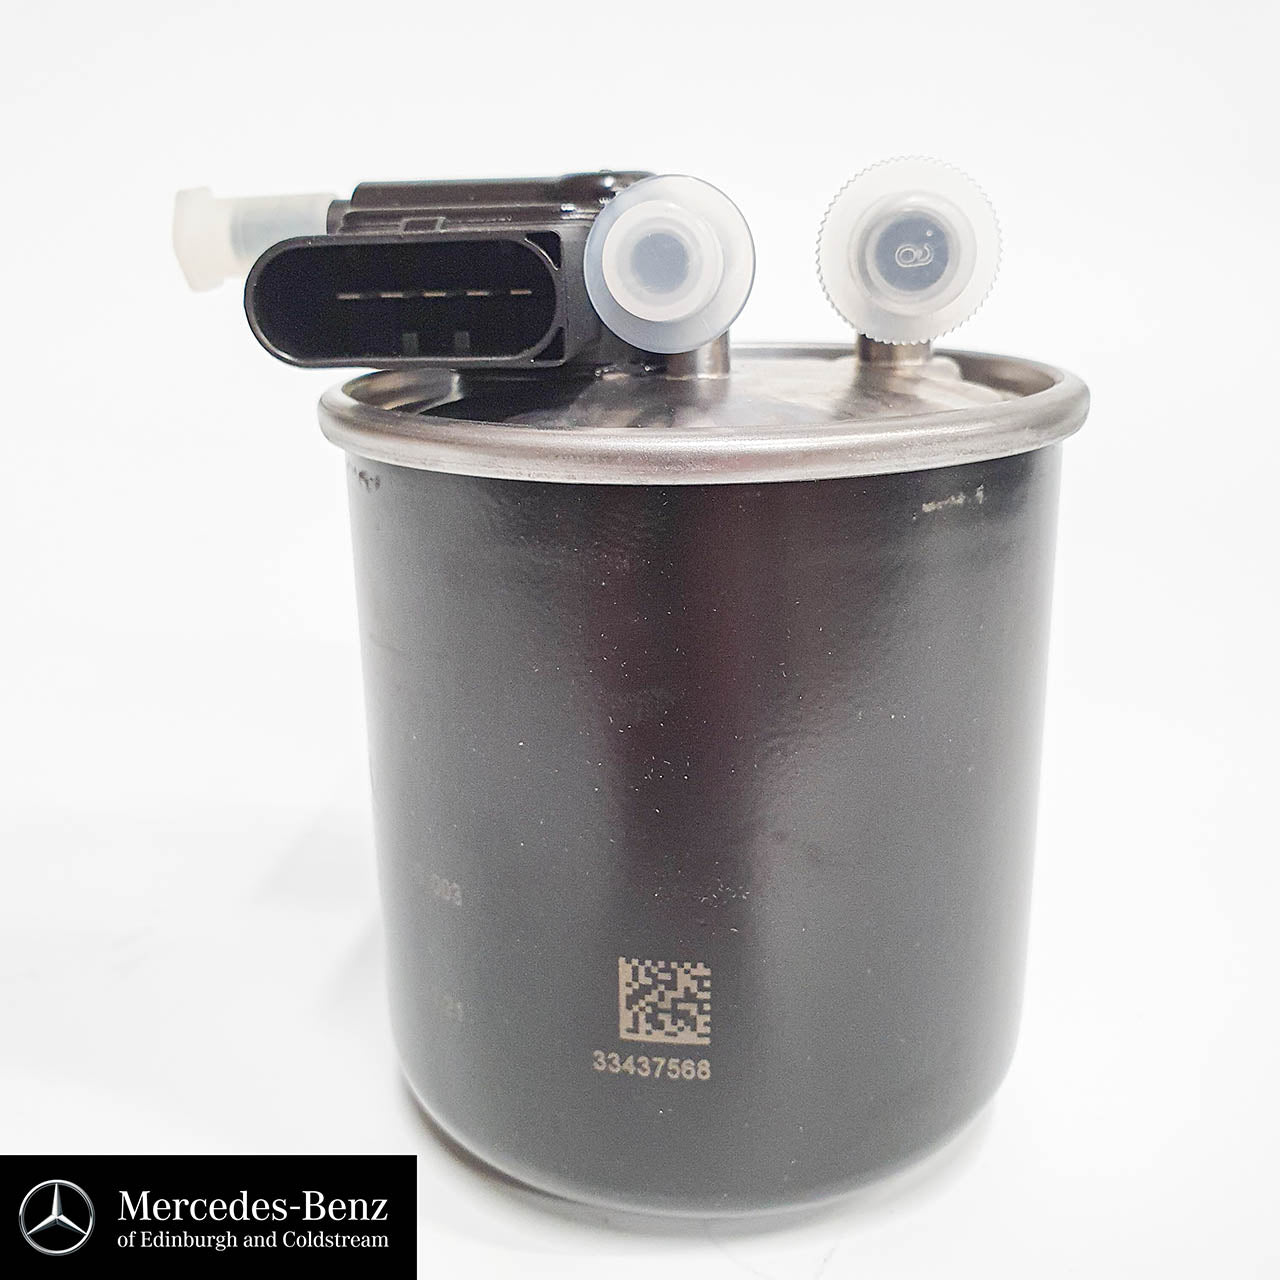 Genuine Mercedes-Benz fuel filter for OM651 diesel engines